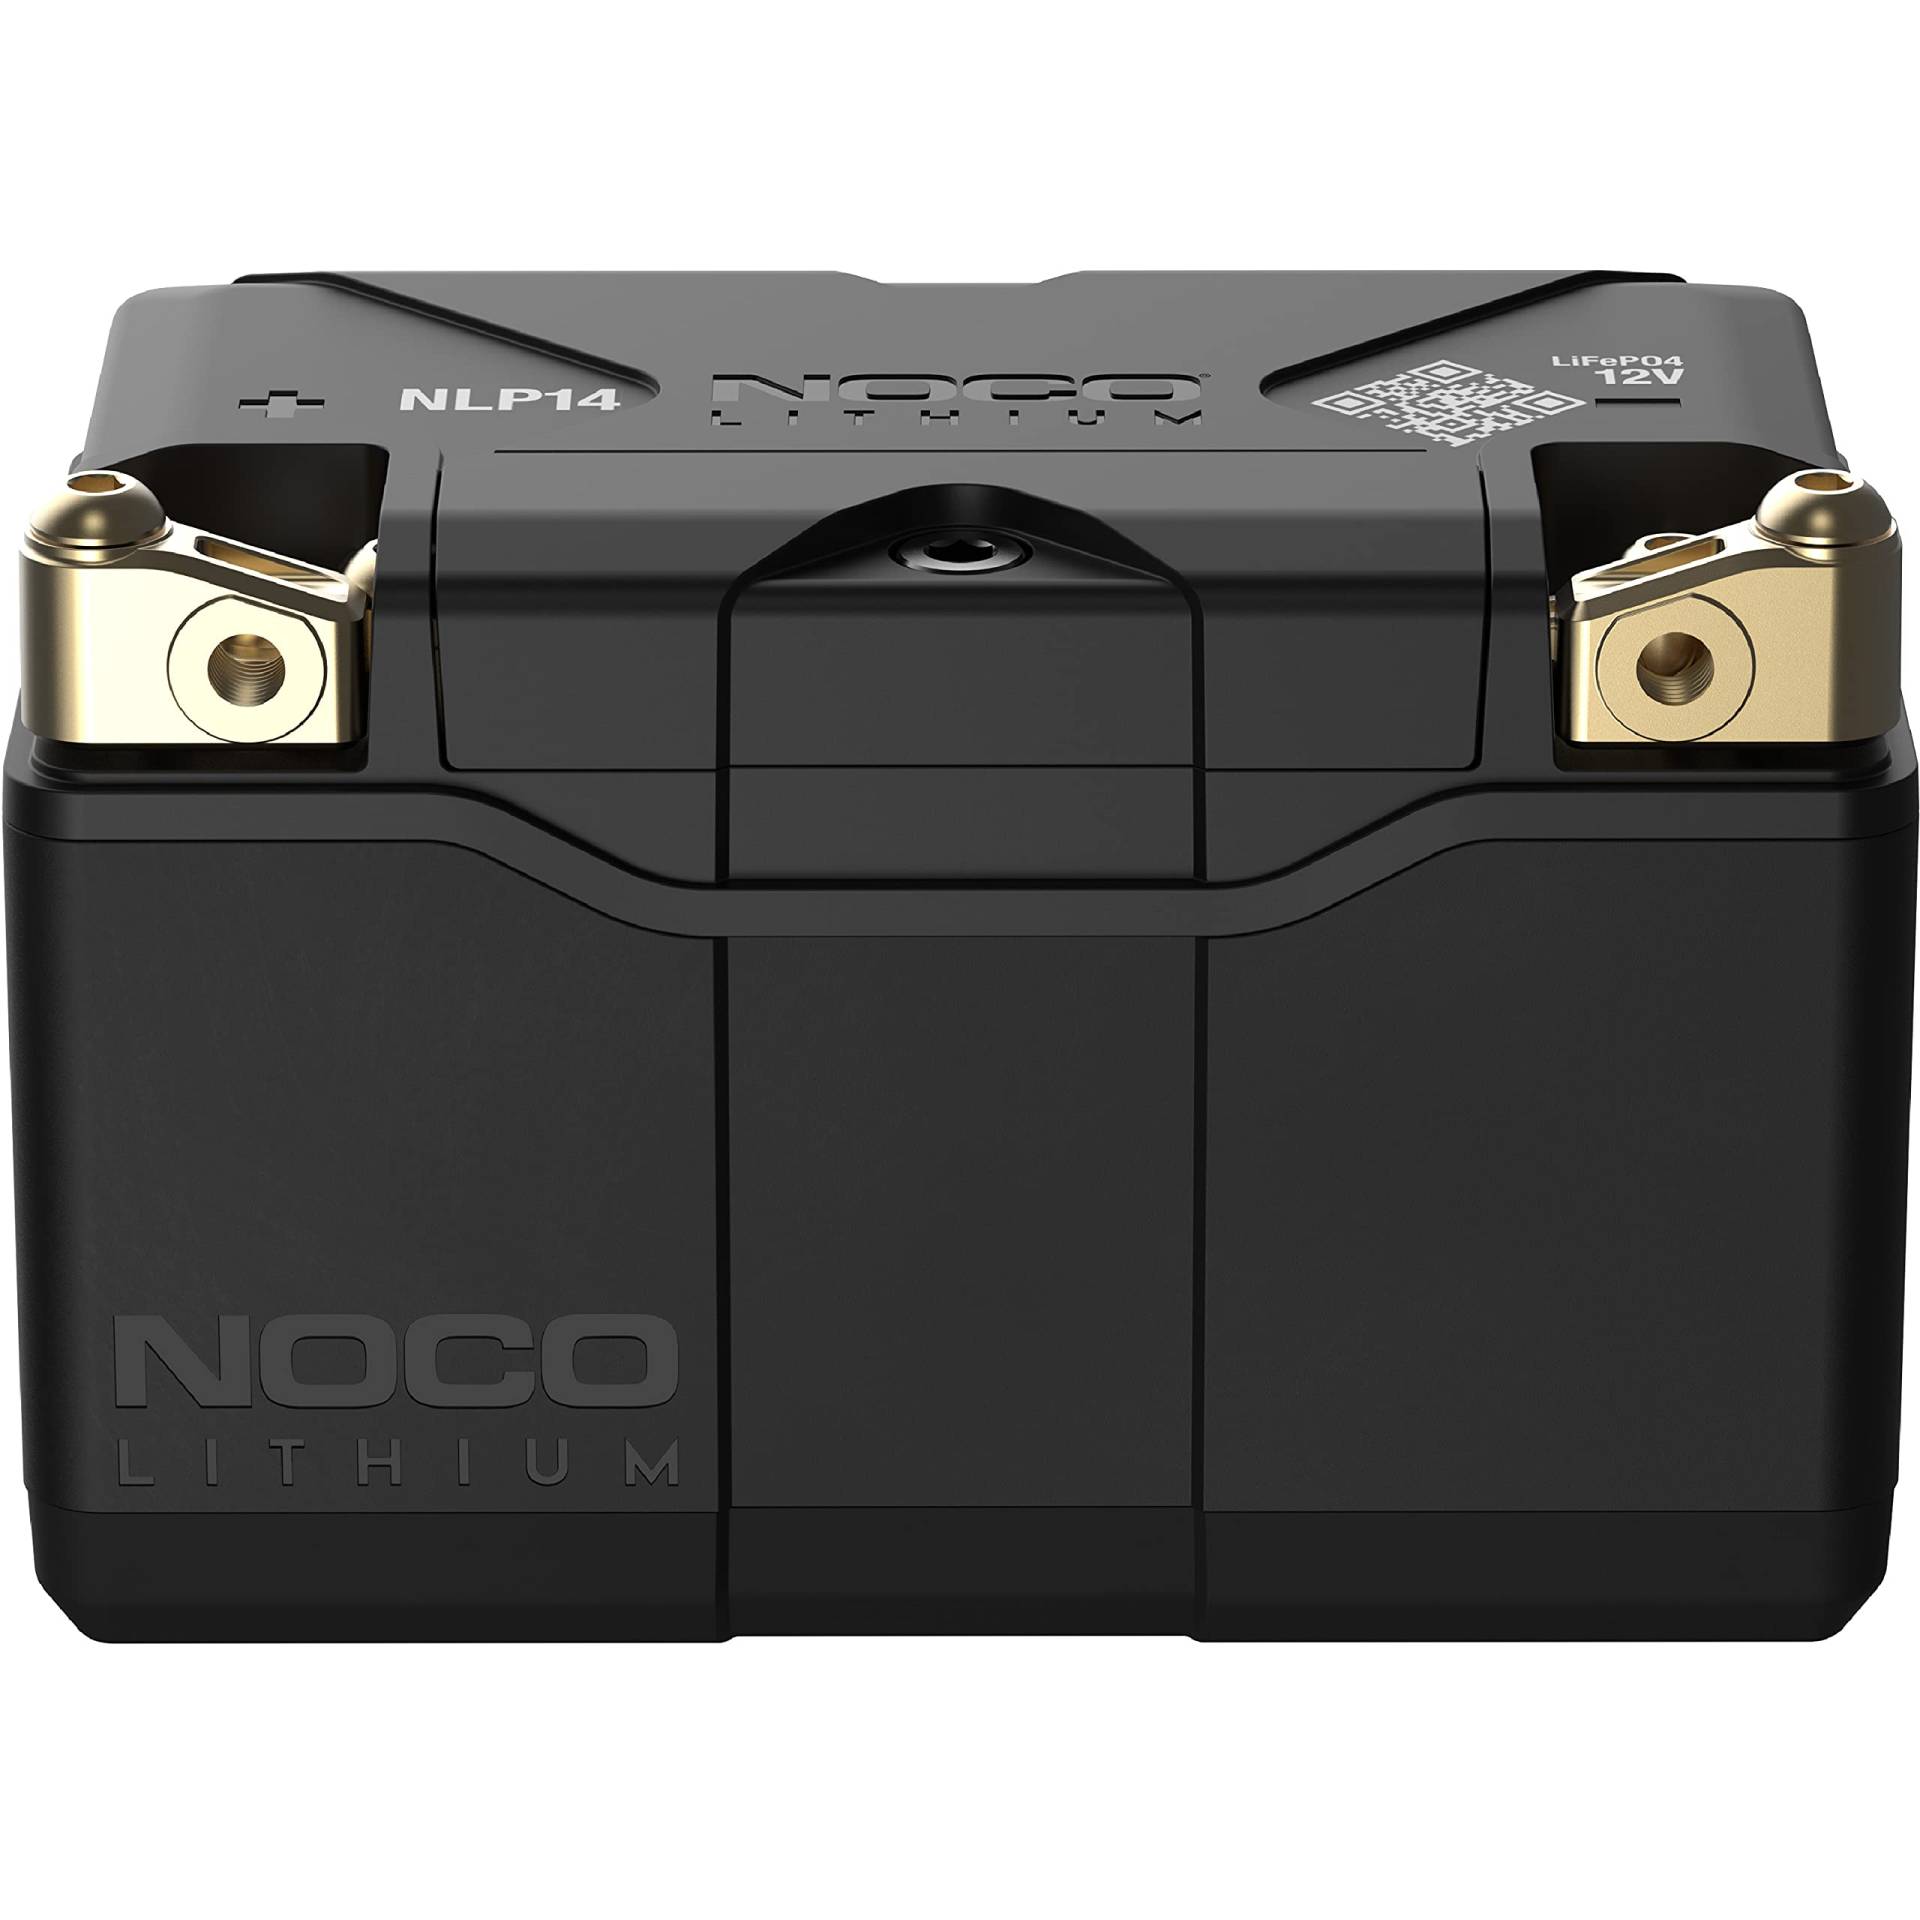 NOCO Lithium NLP14, 500A Powersports-Batterie, 12V 4Ah Litium-Ionen-Batterie für Motorräder, Quads, UTVs, Jet-Skis, Roller, Schneemobile und Rasenmäher von NOCO